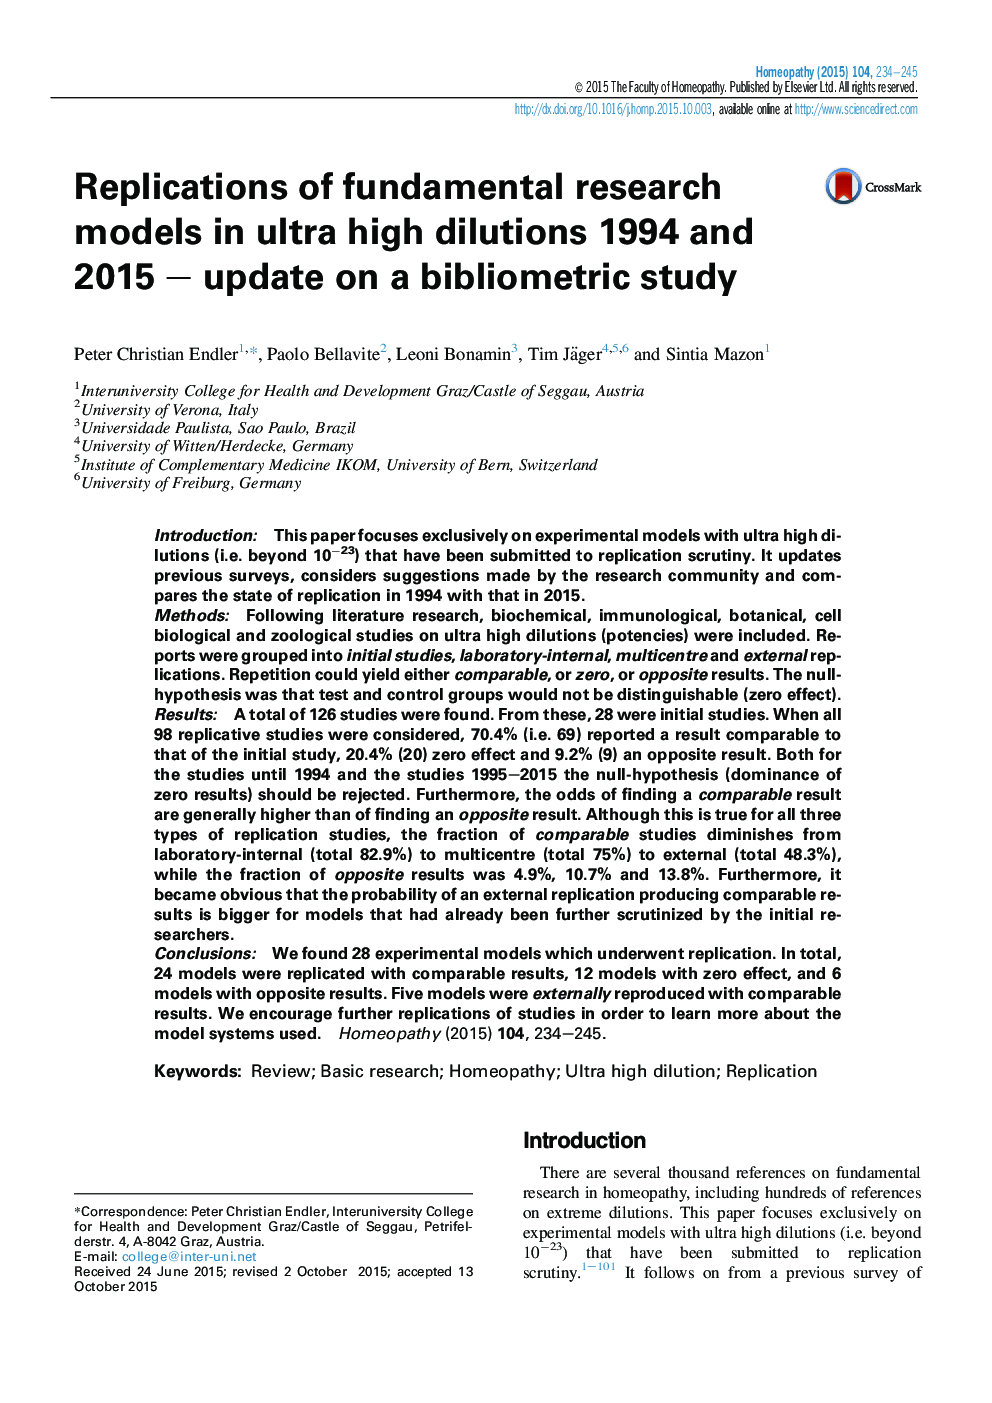 تکرار مدل های تحقیقات بنیادی در رقت فوق العاده بالا 1994 و 2015 - به روز رسانی در یک مطالعه کتابسنجی